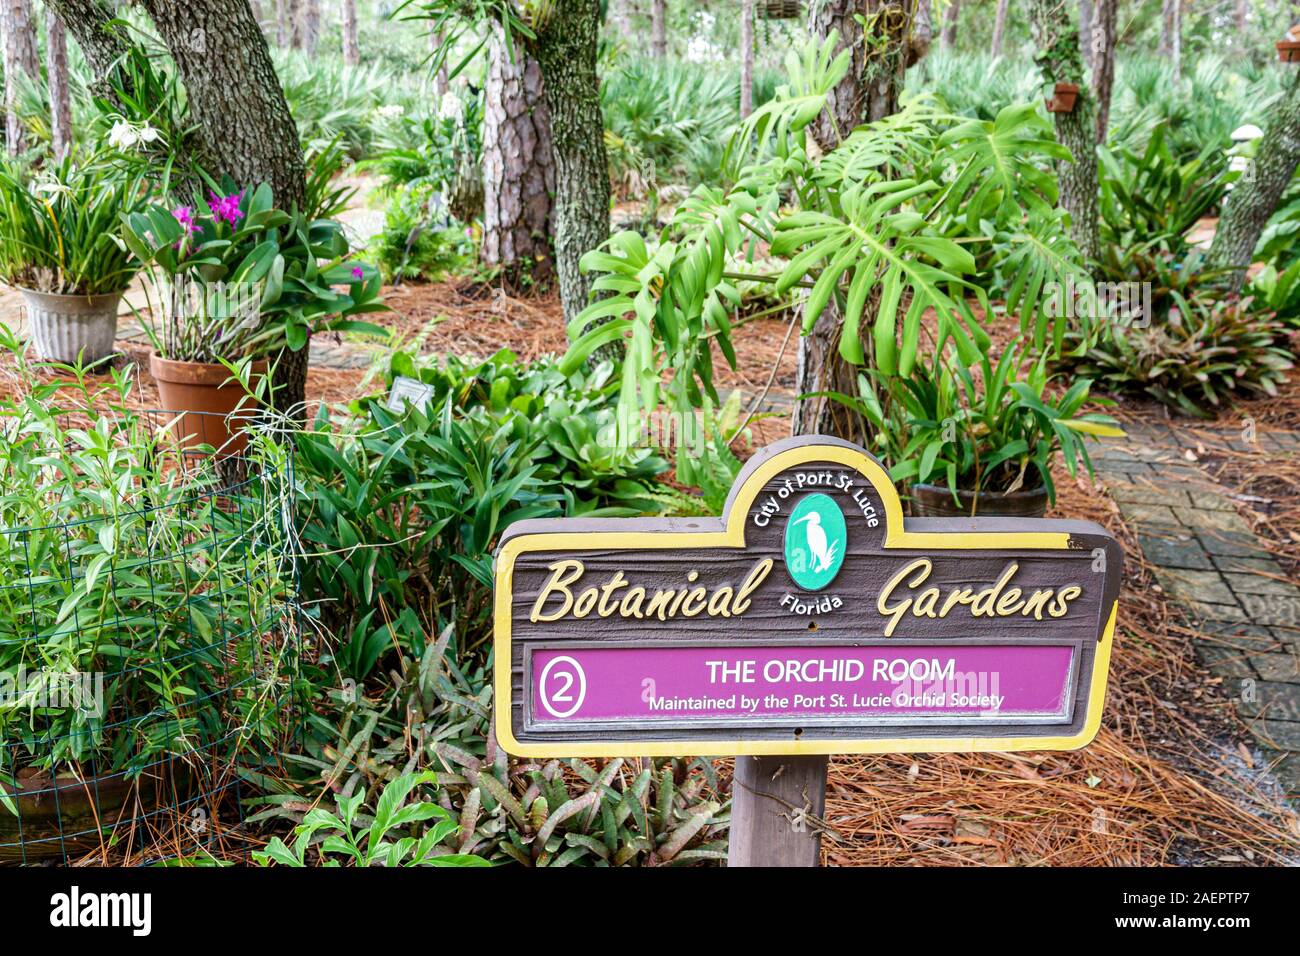 Port St. Saint Lucie Florida, Port St. Lucie Botanical Gardens, Orchideenzimmer, Garten, Schild, FL190920036 Stockfoto